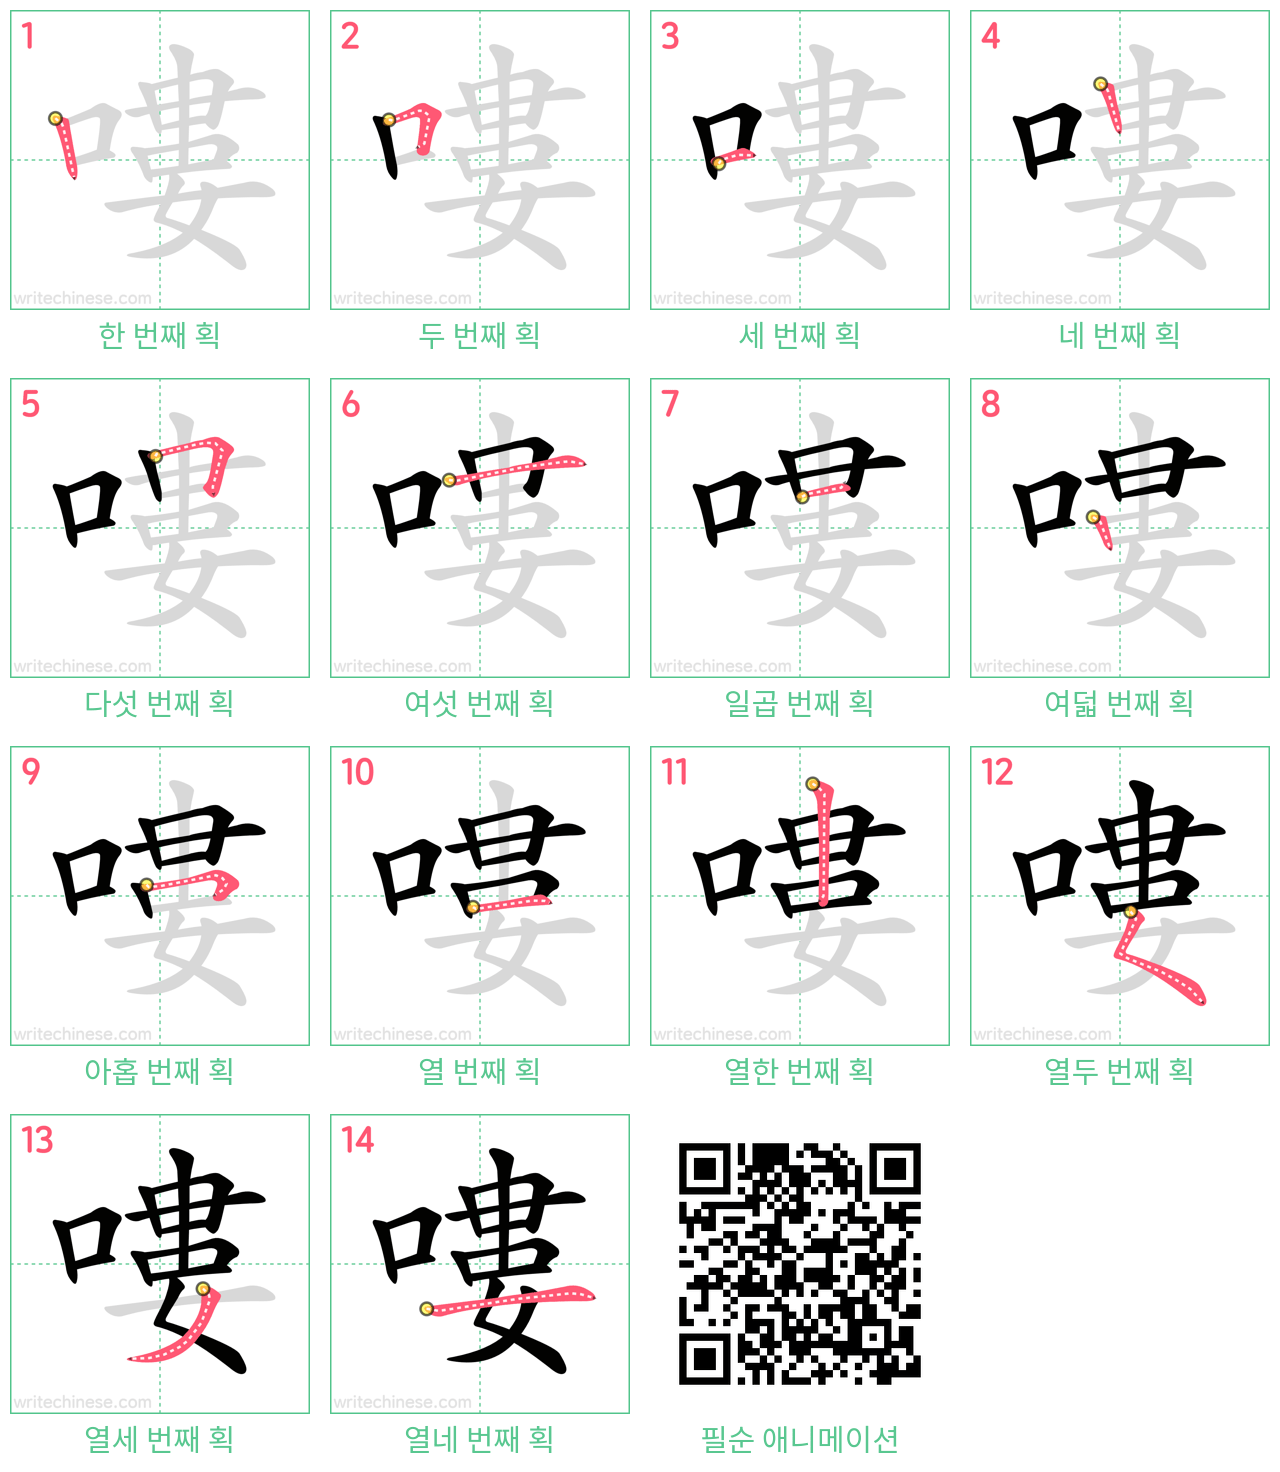 嘍 step-by-step stroke order diagrams